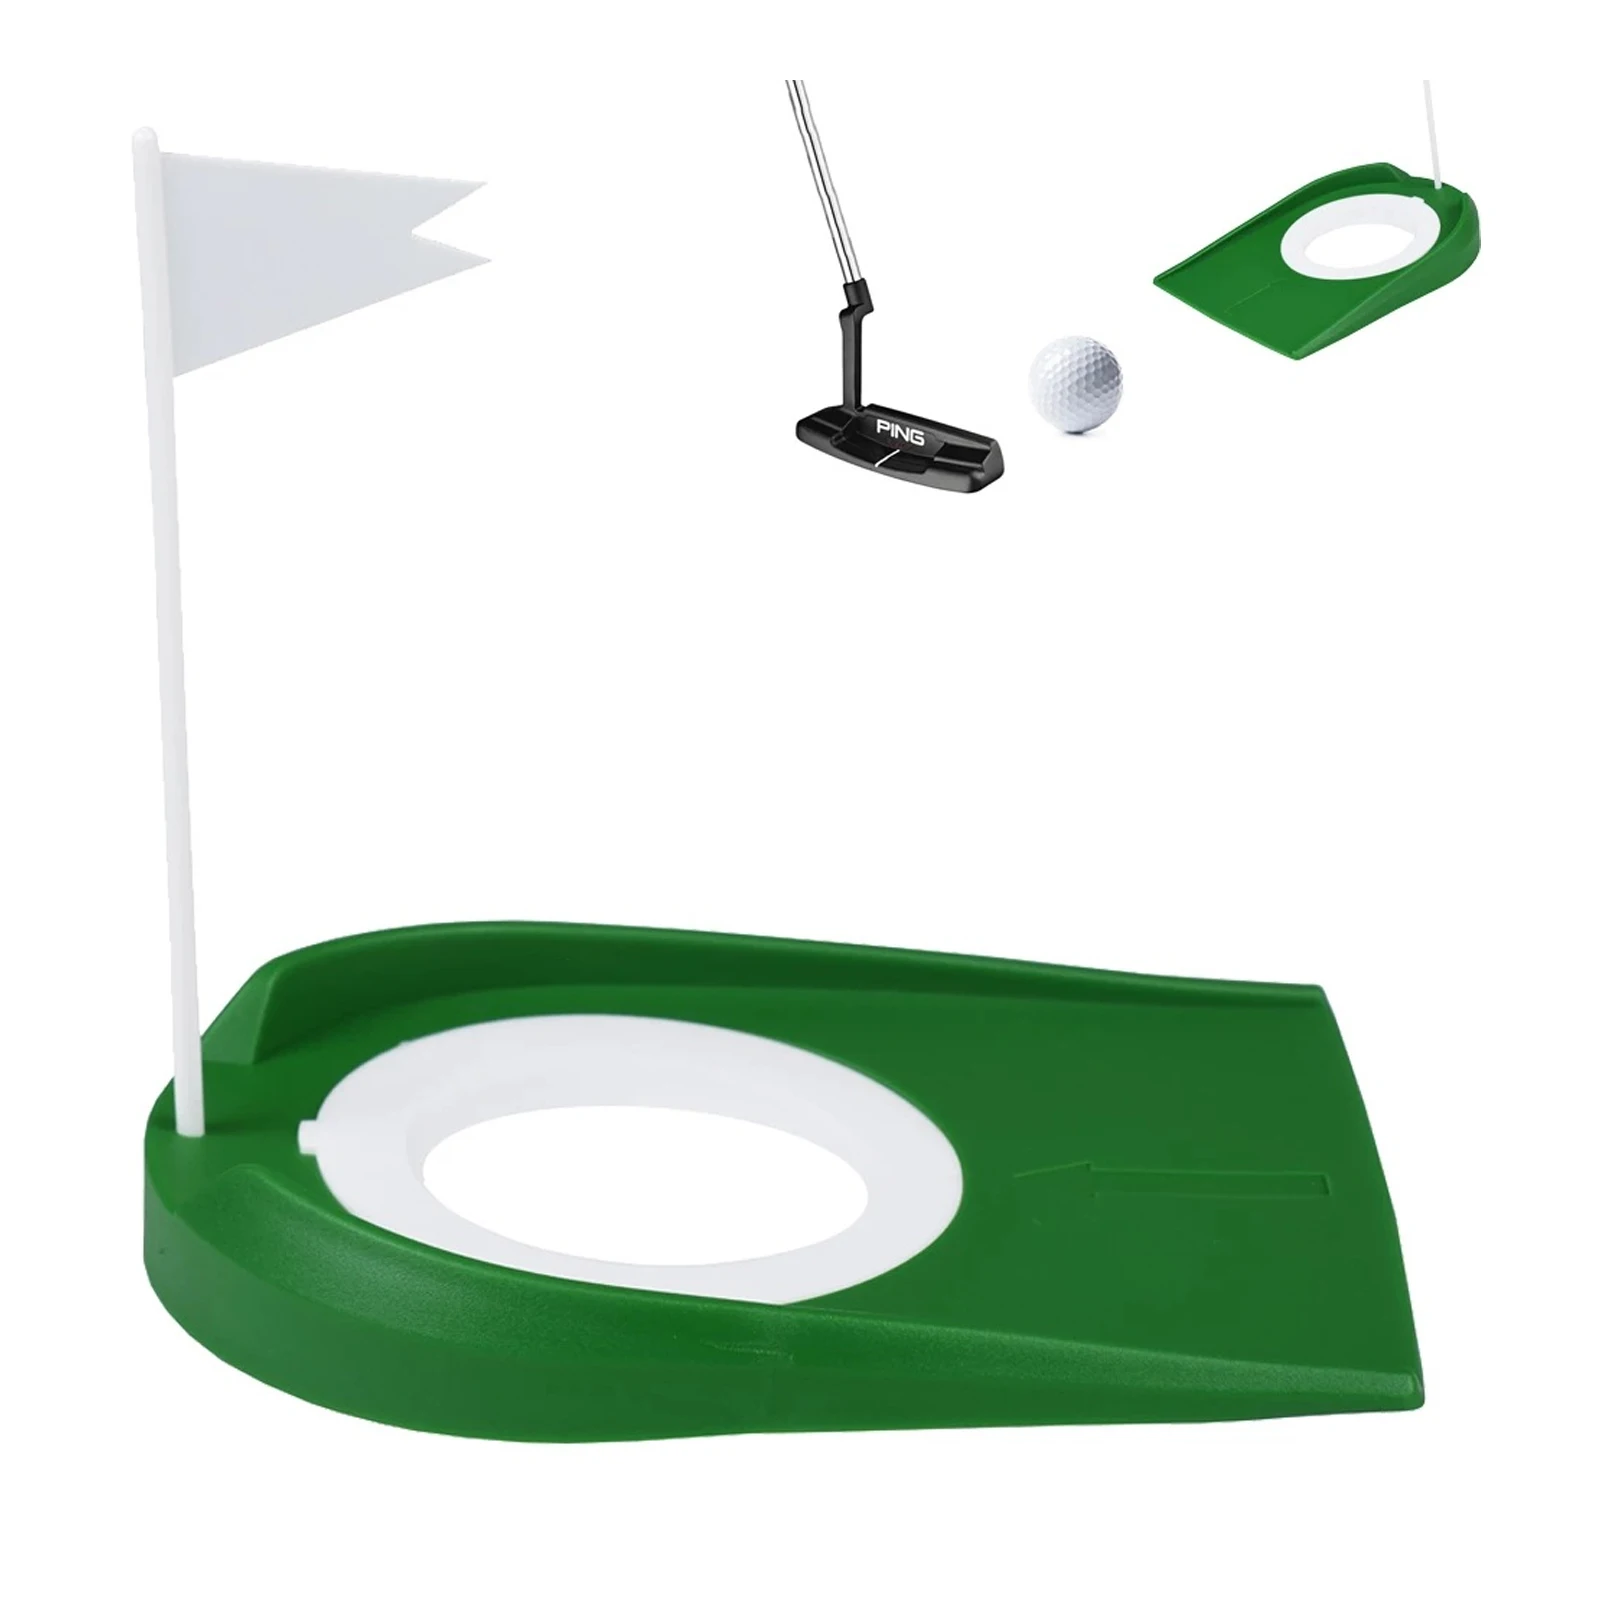 

Пластиковый стакан для игры в гольф для использования в помещении и на улице, учебные пособия с регулируемым отверстием, белый флаг, зеленый...